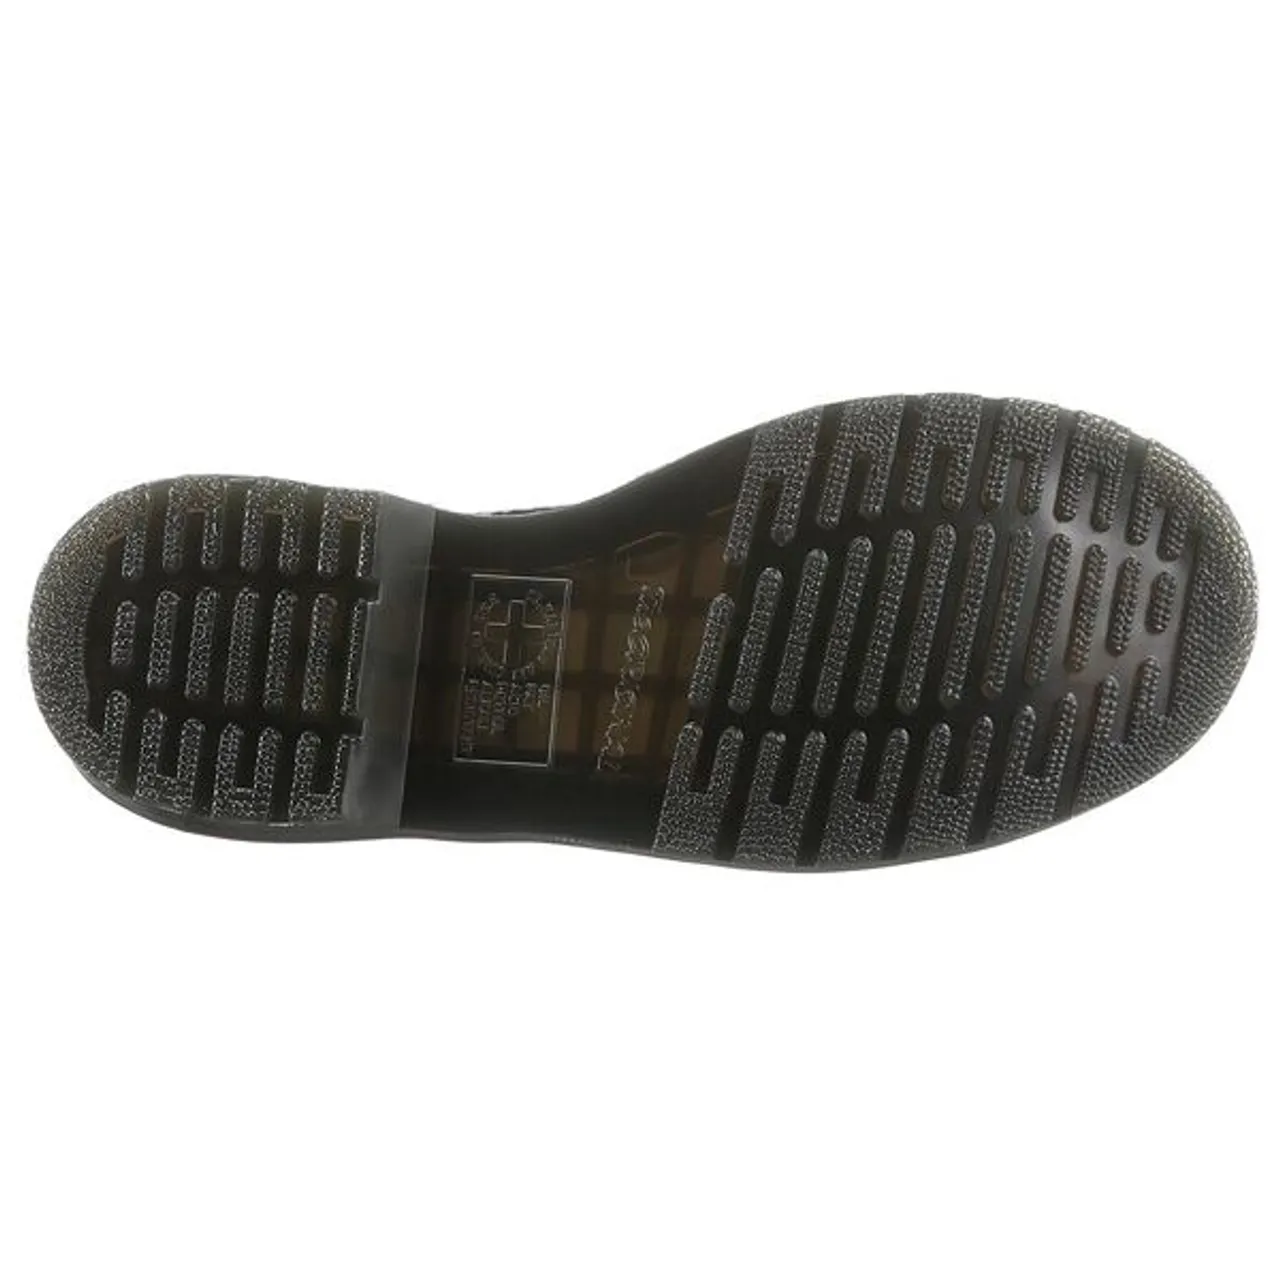 Schnürstiefel DR. MARTENS "1460 PASCAL 8 Eye Boot" Gr. 37, schwarz (schwarz, geblümt) Damen Schuhe Stiefel